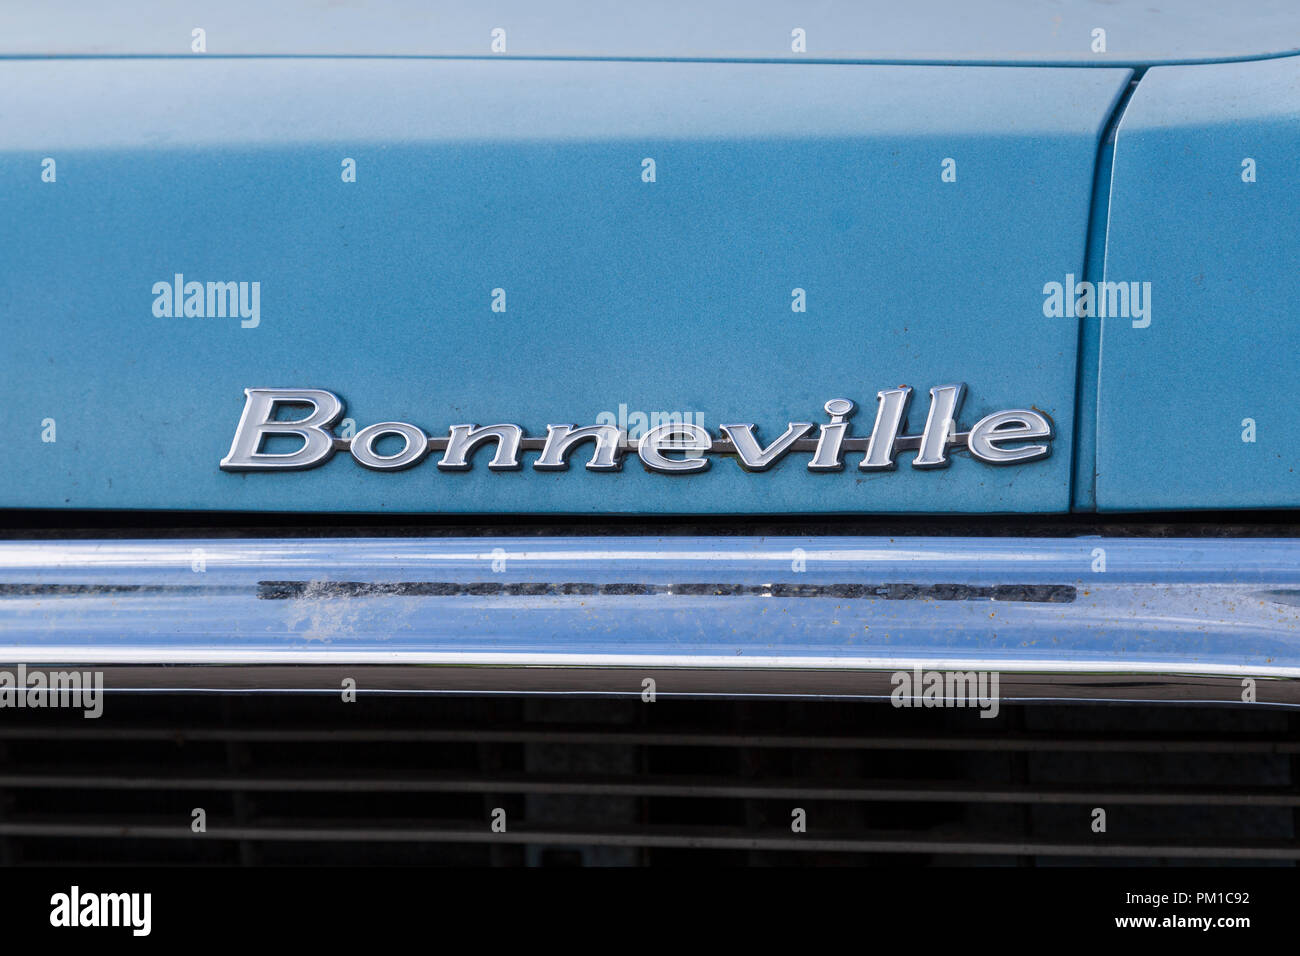 La Pontiac Bonneville, seconda generazione, 1959-1960, tipografia dettaglio Foto Stock